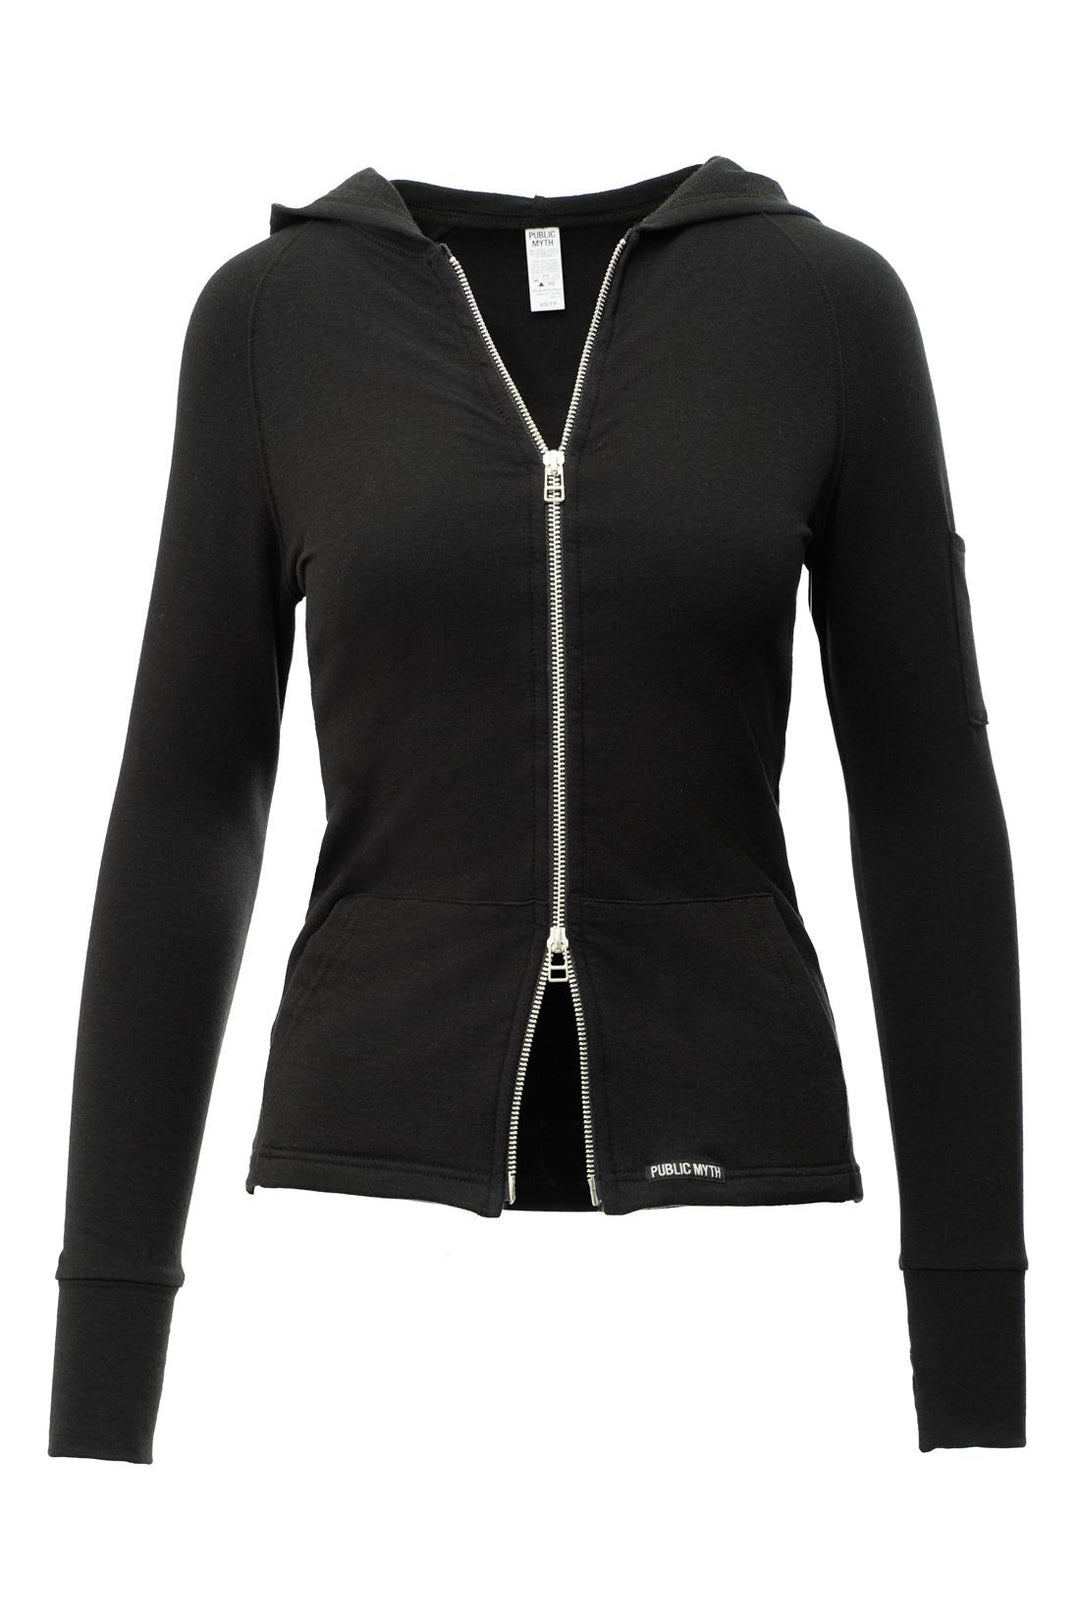 Black zip up hoodie for women